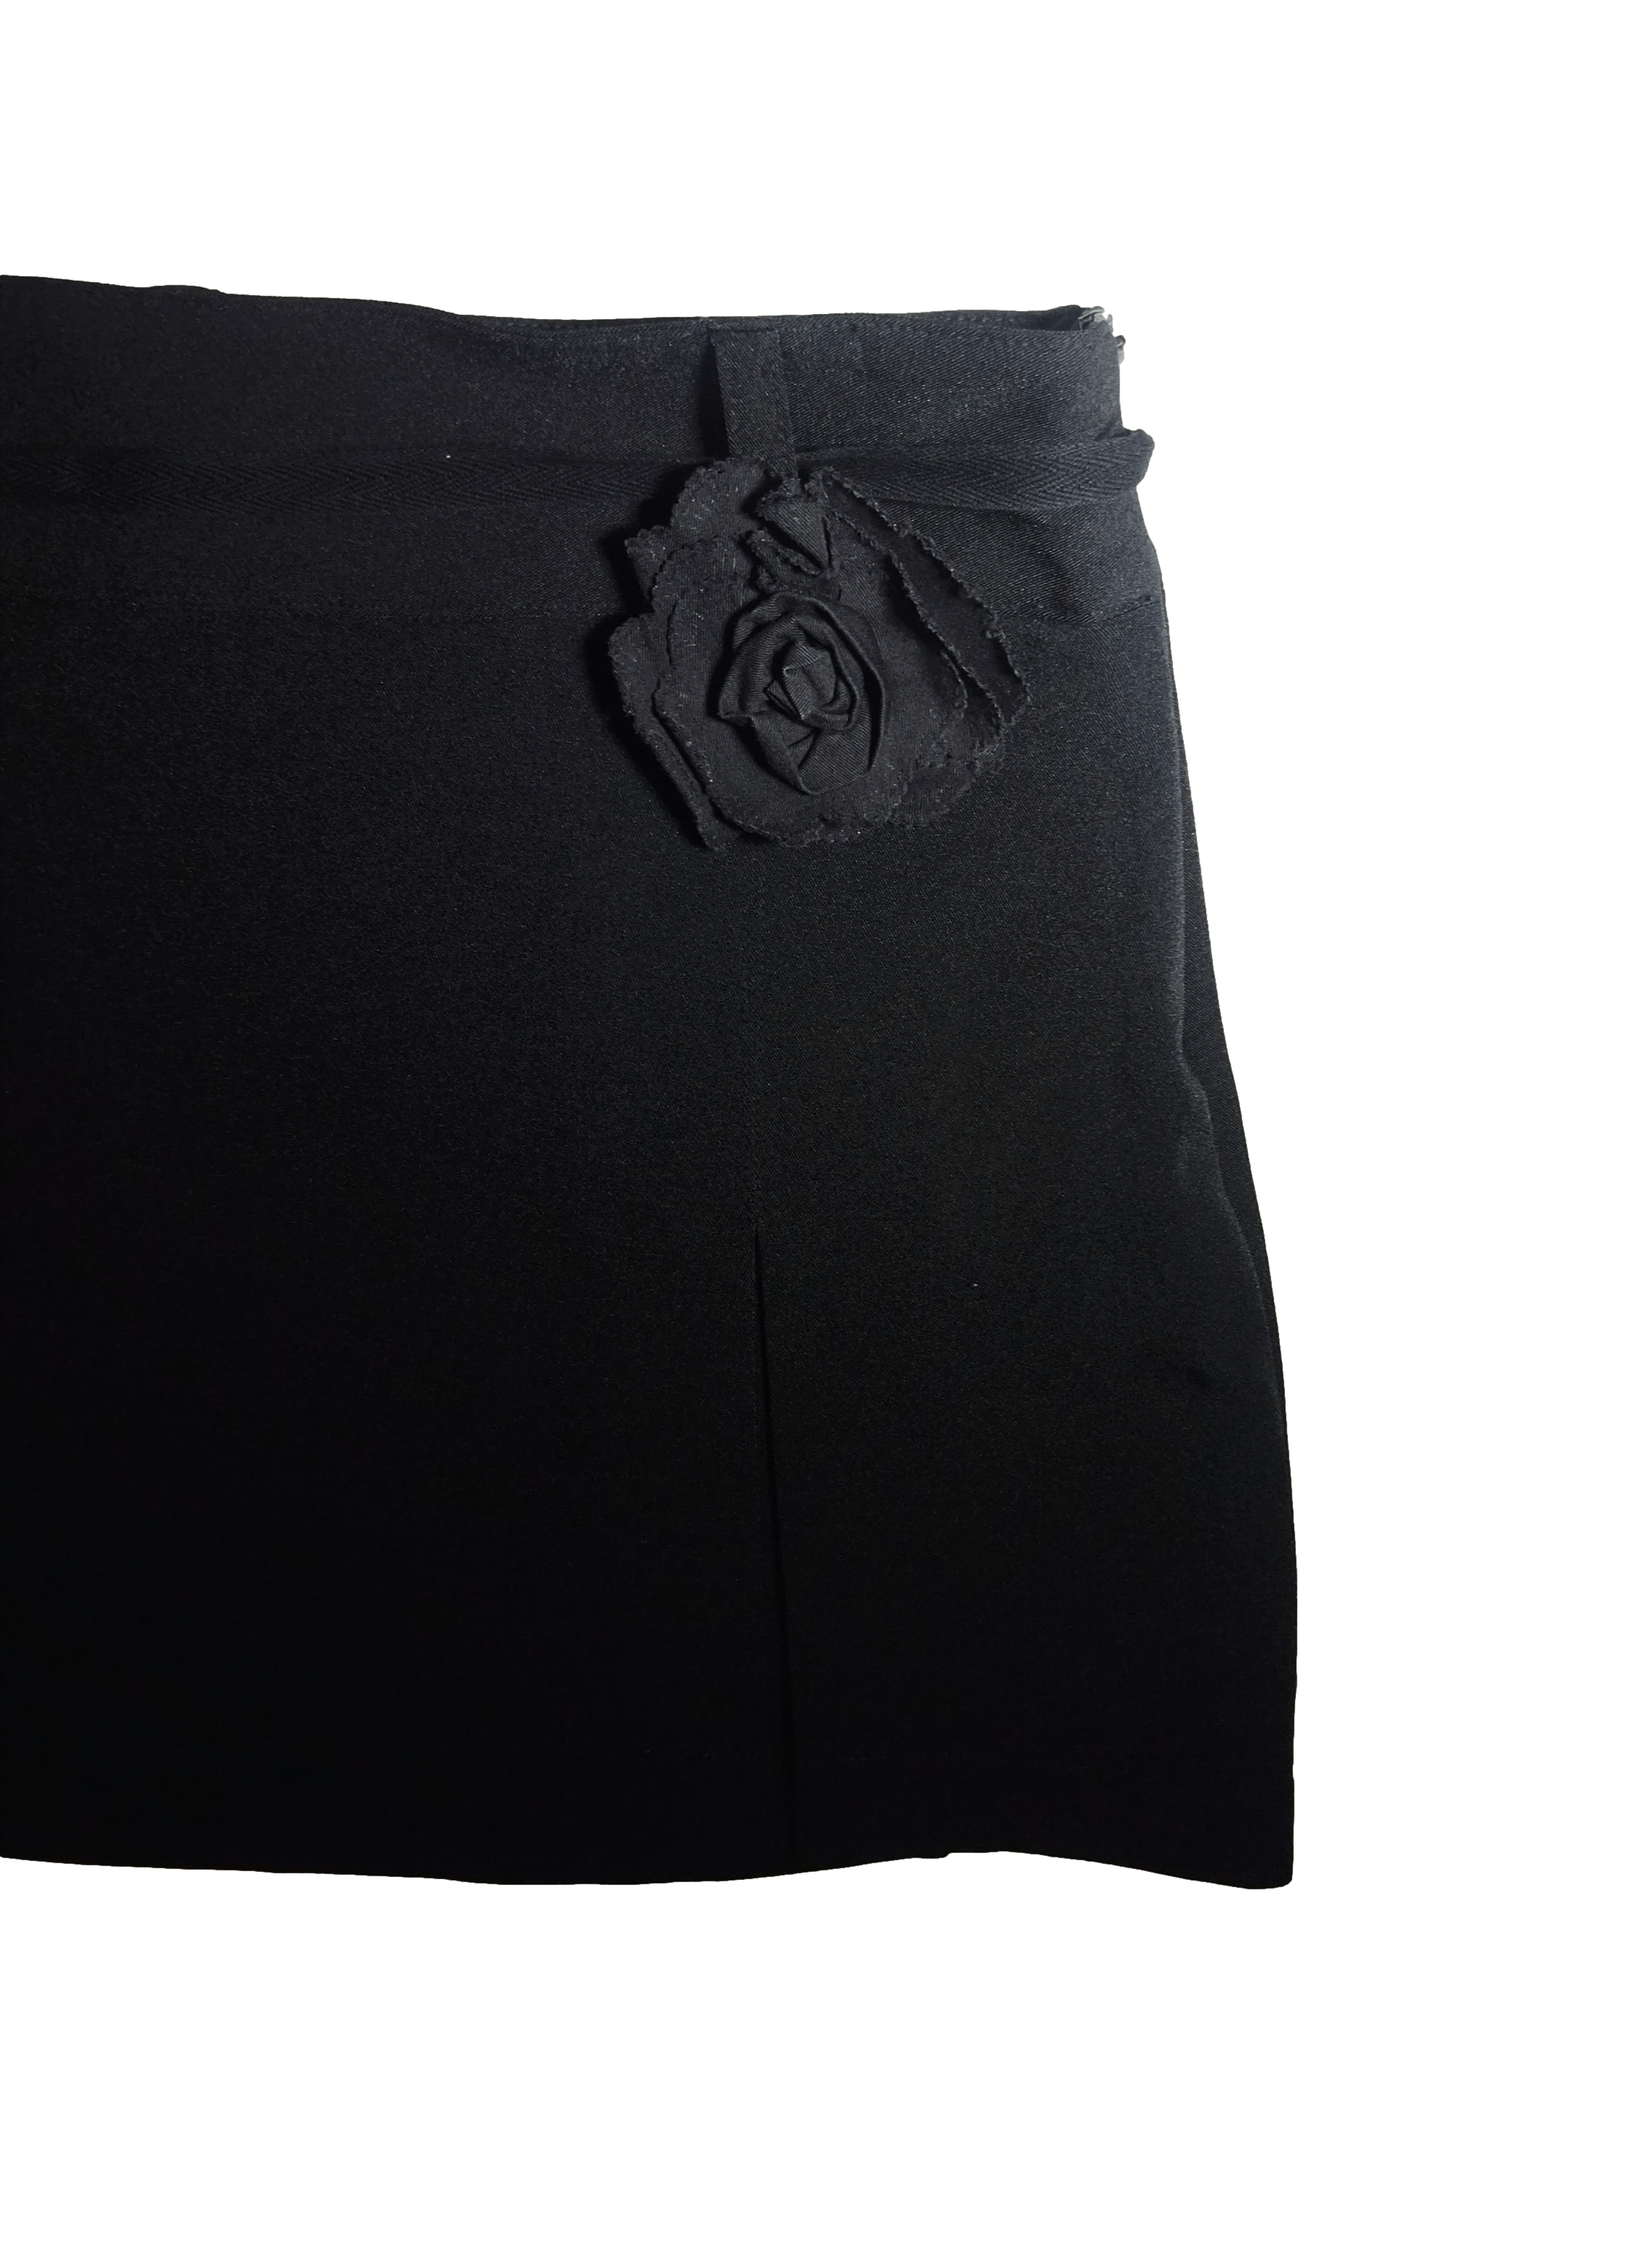 Falda worthington negra con forro interno y cierre invisible cintura 76 cm largo 60 cm